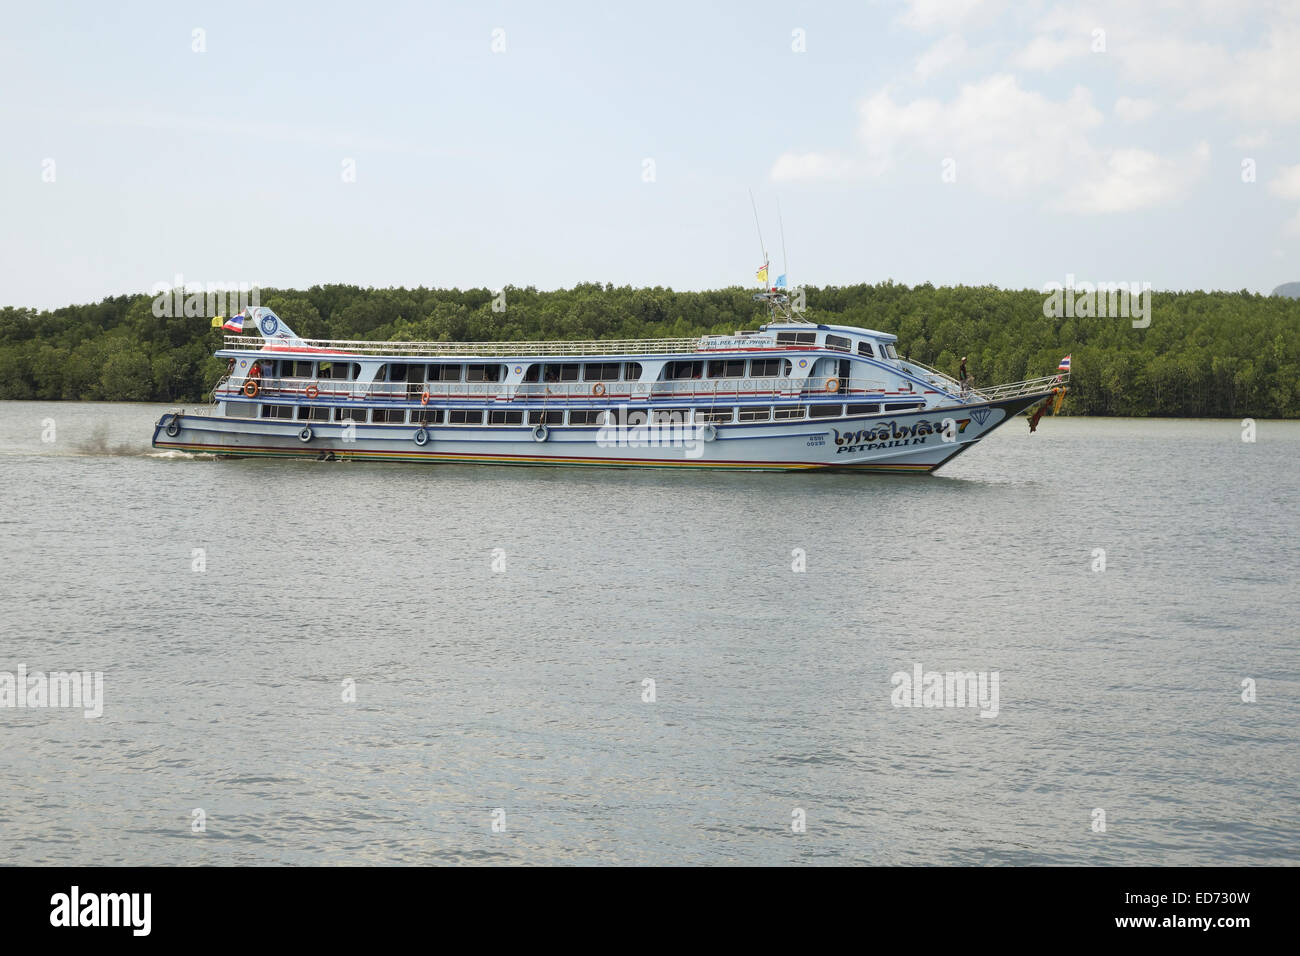 Ferry Boat réunissant les touristes voyageurs à destination des îles Phi Phi. Le sud de la Thaïlande. Krabi, en Asie du sud-est. Banque D'Images